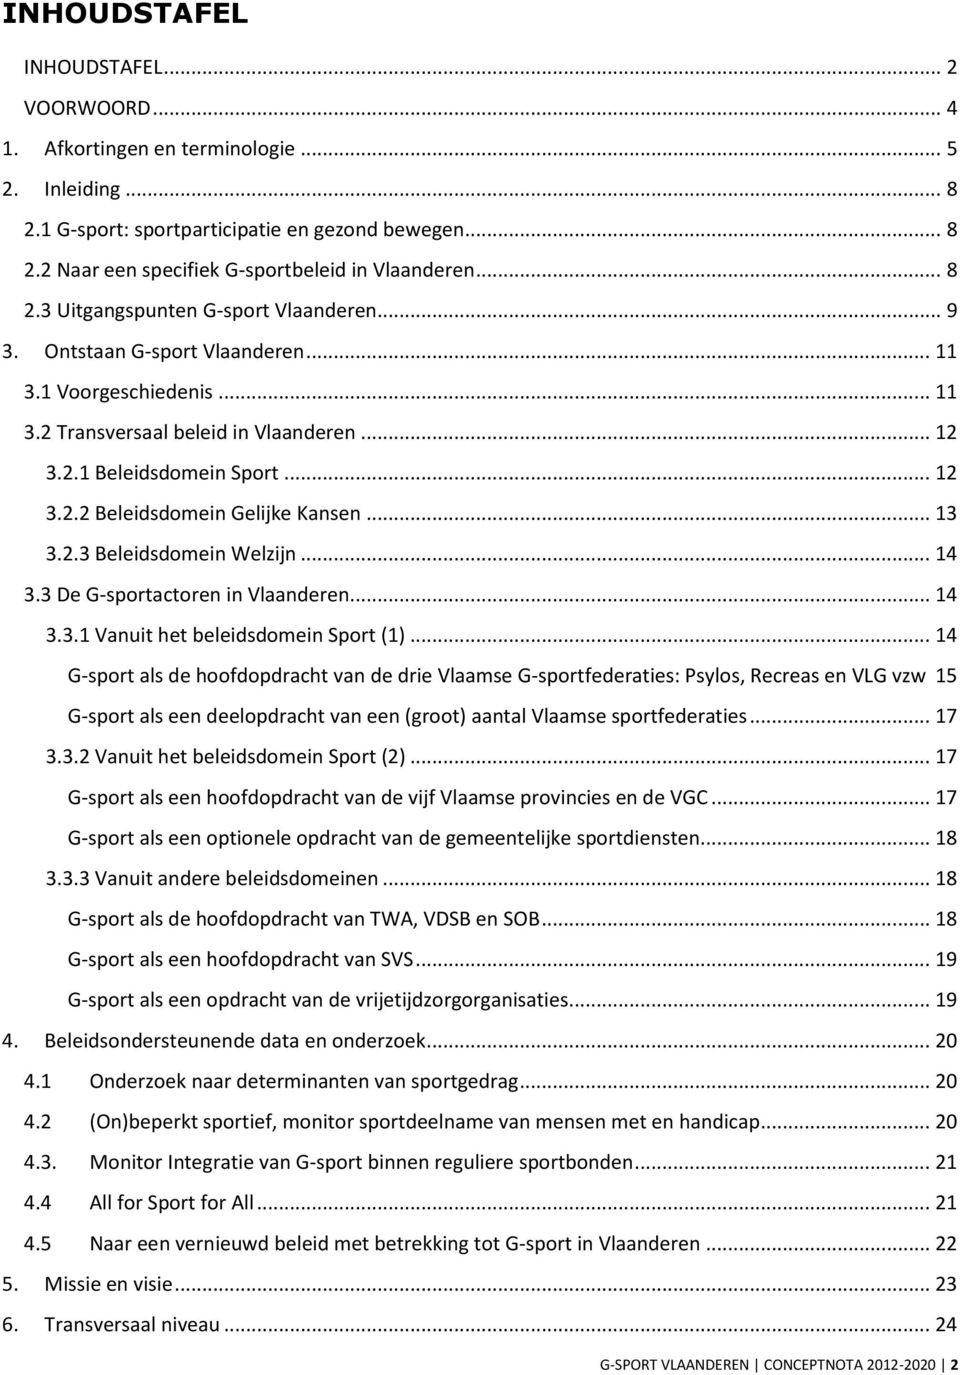 .. 13 3.2.3 Beleidsdomein Welzijn... 14 3.3 De G-sportactoren in Vlaanderen... 14 3.3.1 Vanuit het beleidsdomein Sport (1).